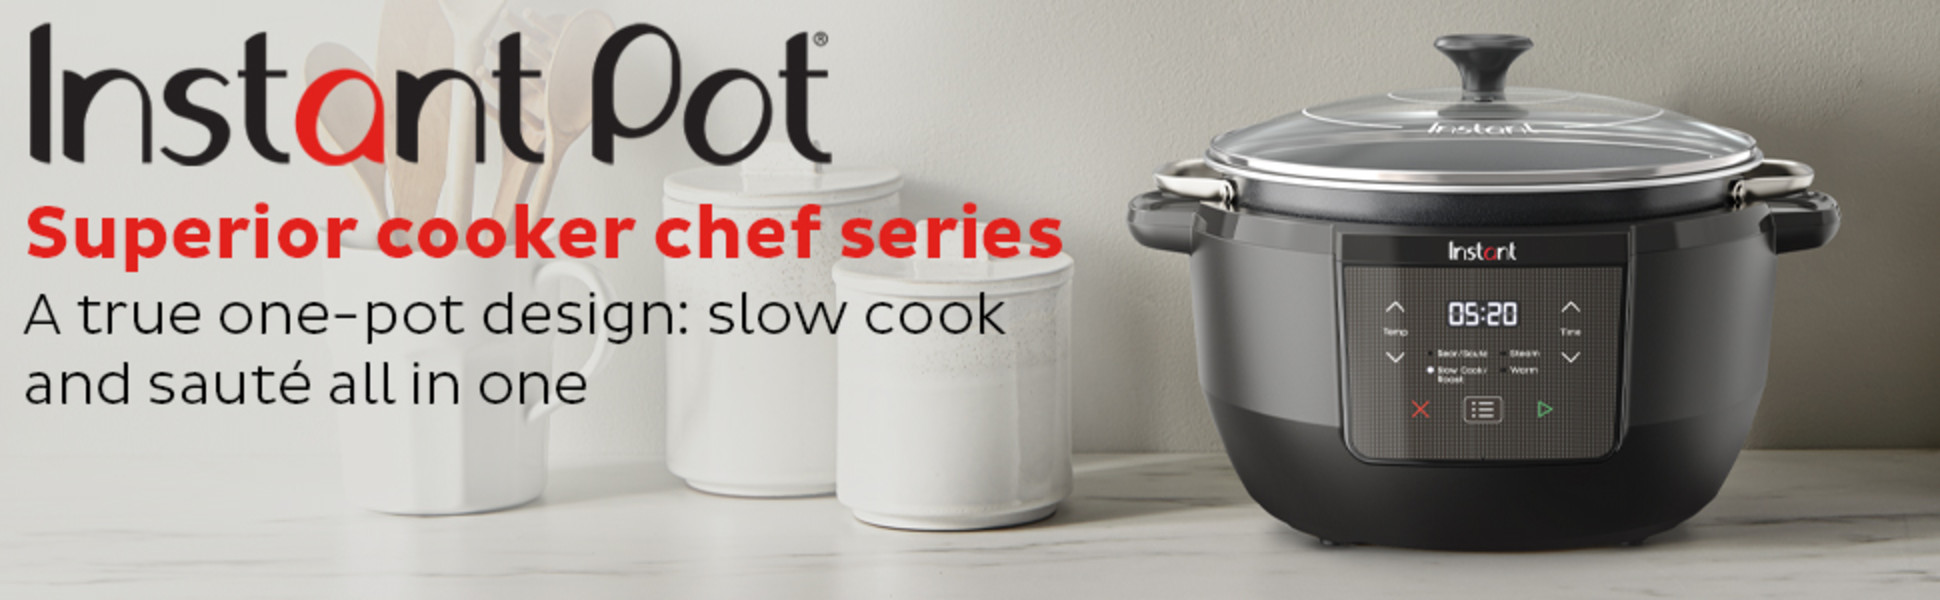 Crock-Pot debuts multi-cooker pressure cooker that rivals Instant Pot